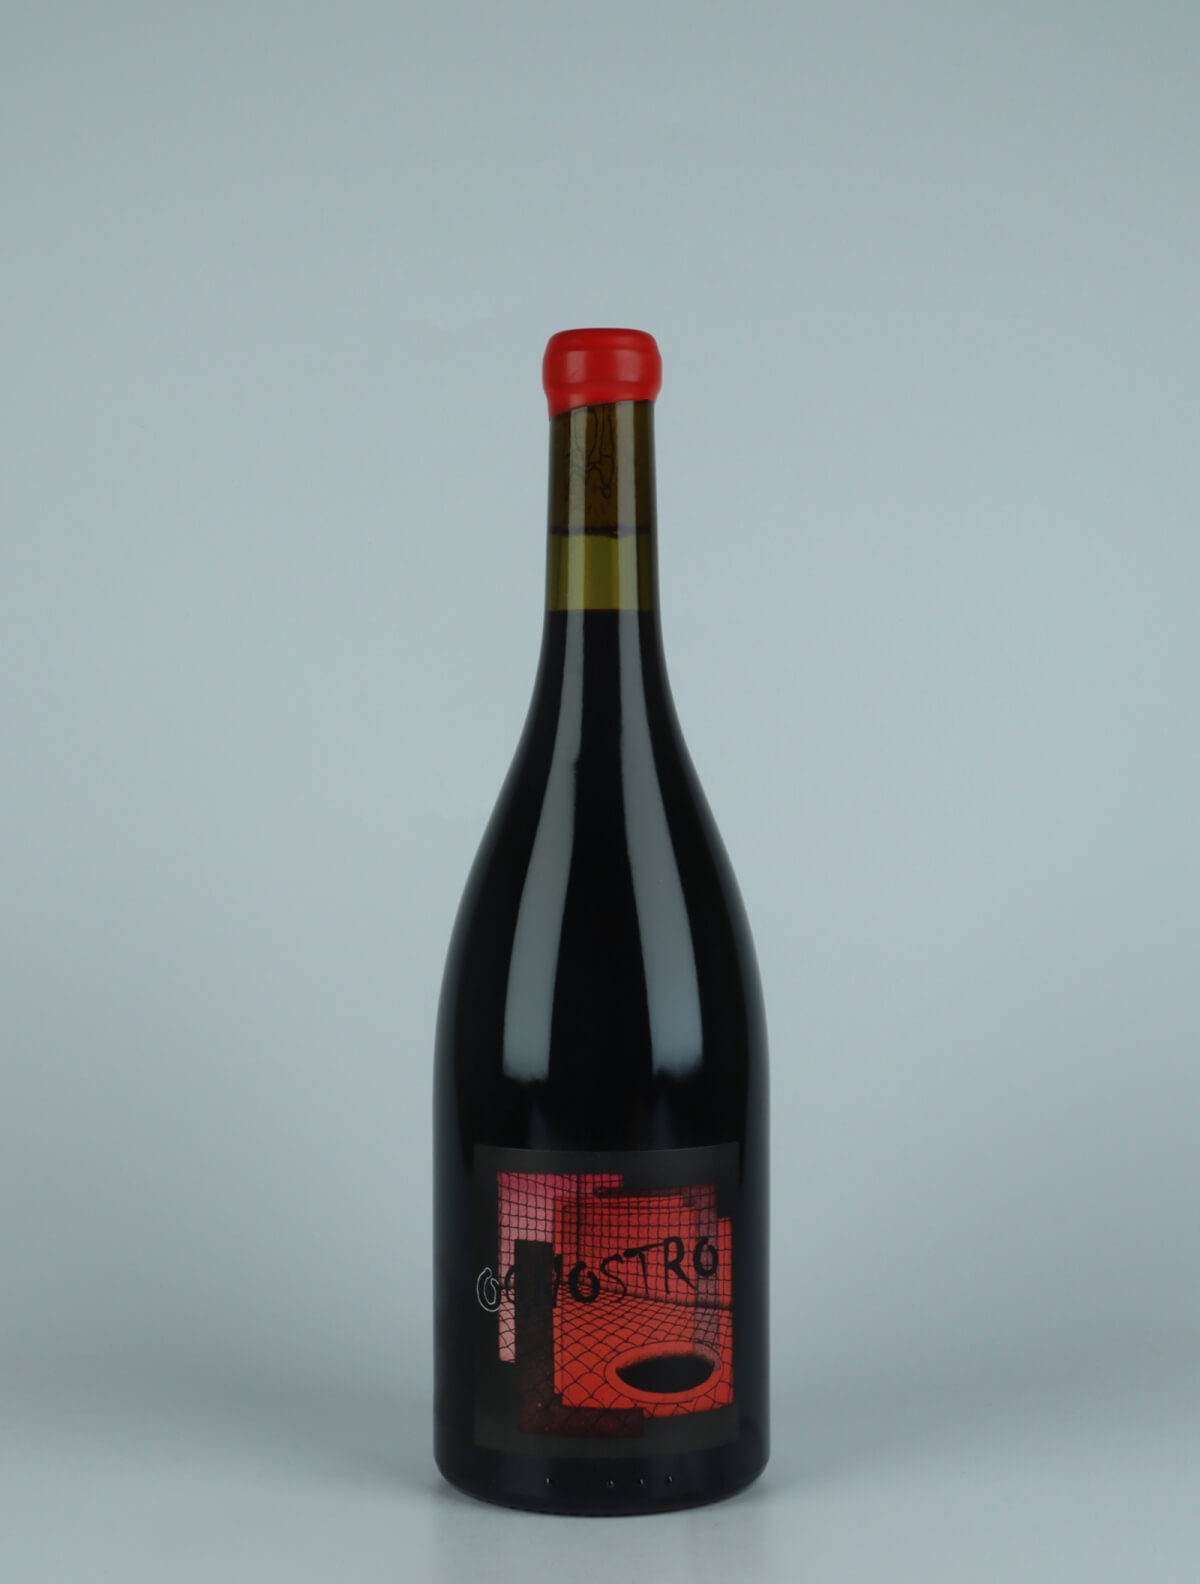 En flaske 2020 Ognostro Rosso Rødvin fra Marco Tinessa, Campanien i Italien